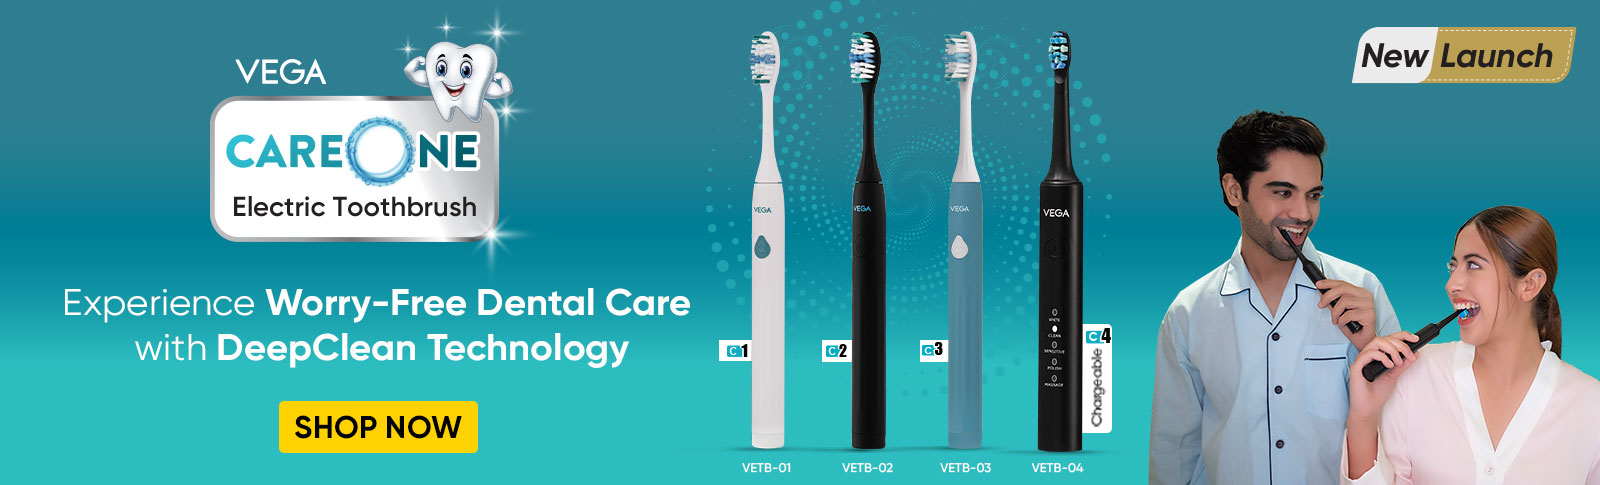 Vega Electric Toothbrush